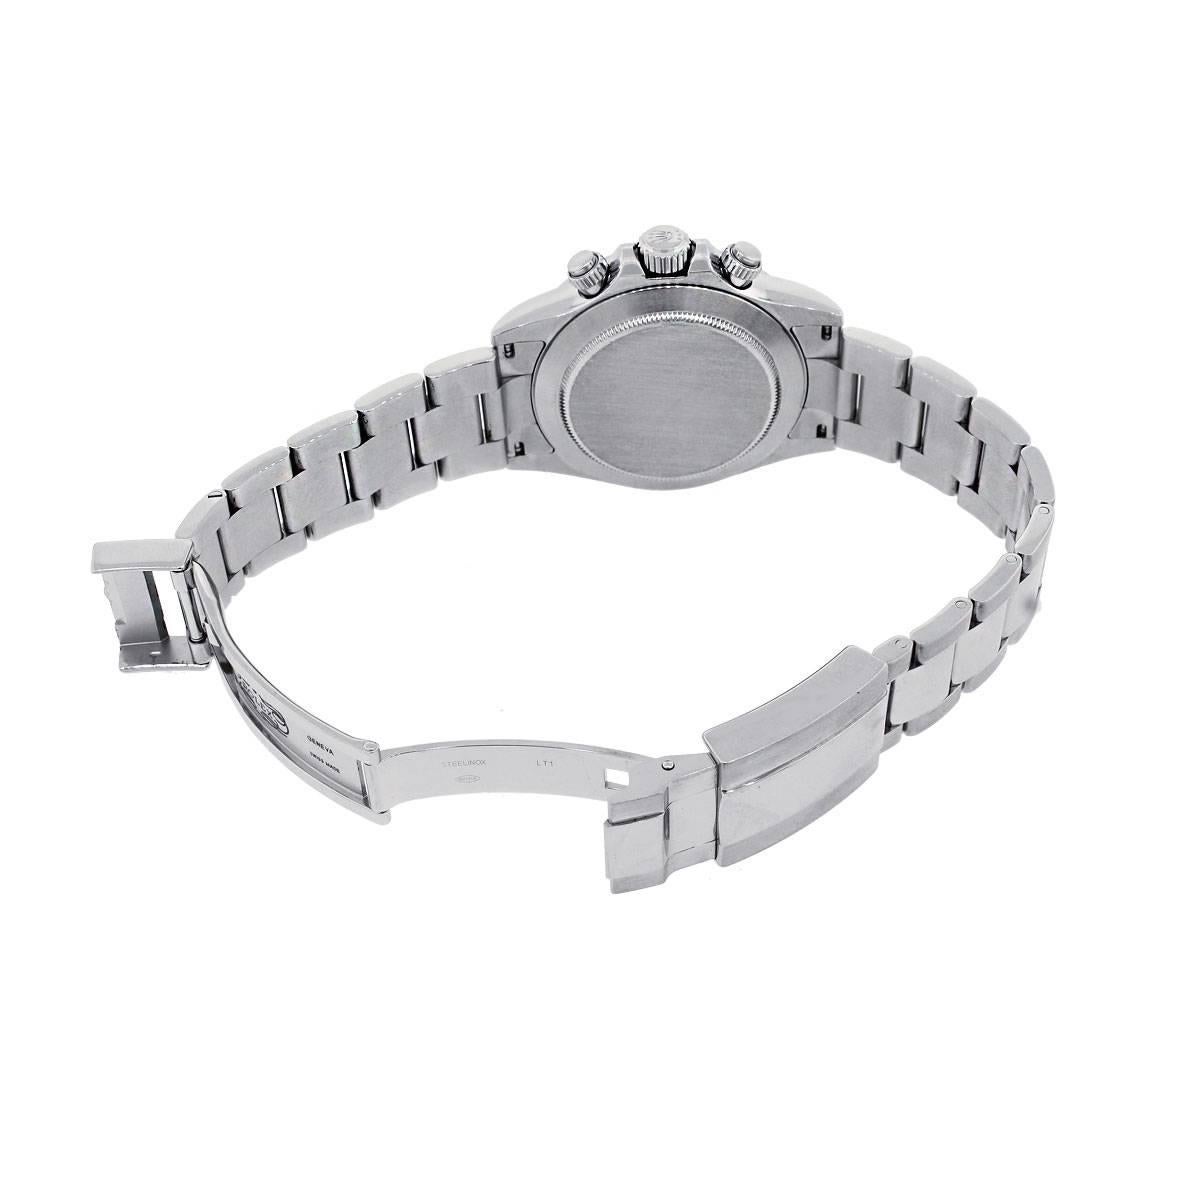 Rolex Stainless Steel Daytona Automatic Wristwatch Ref 116520  1